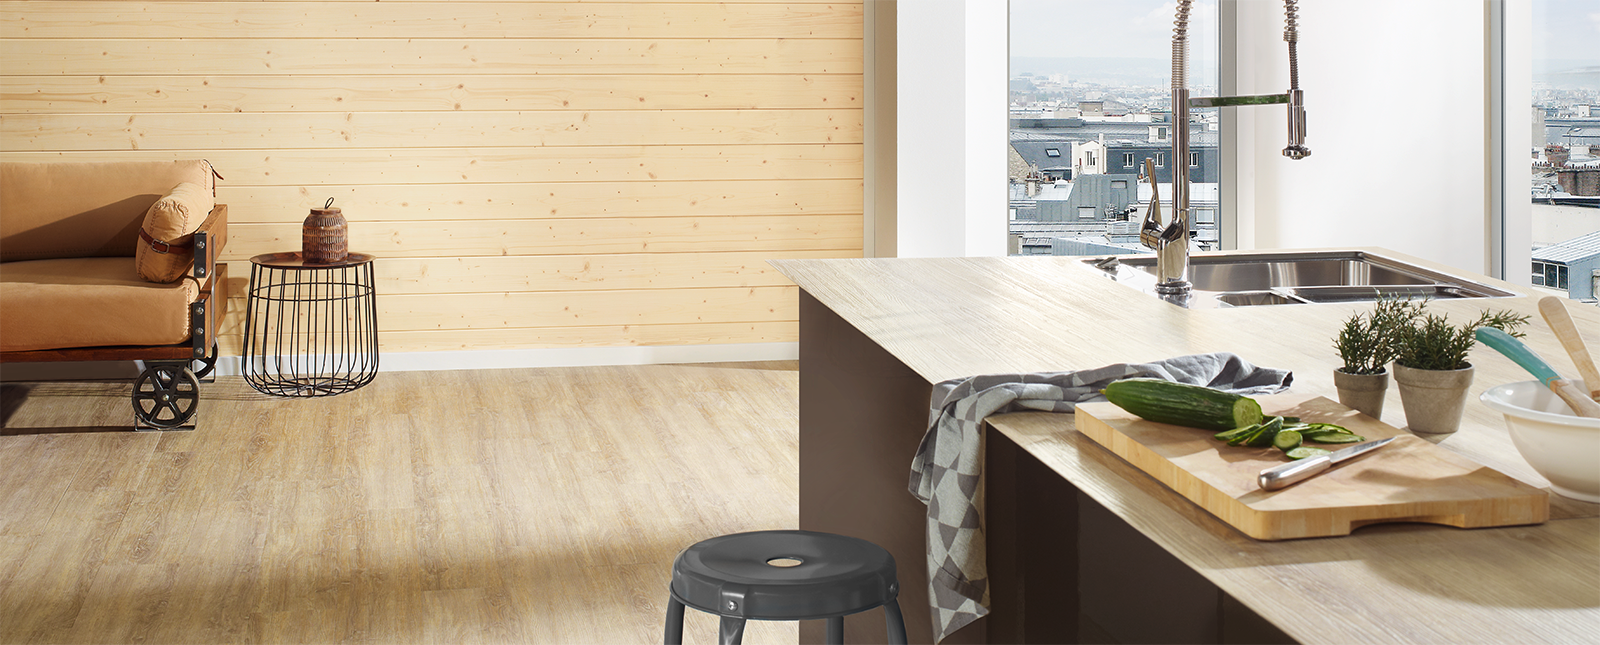 Gemütliche Küche und Wohnzimmer mit Profilholz von Osmo